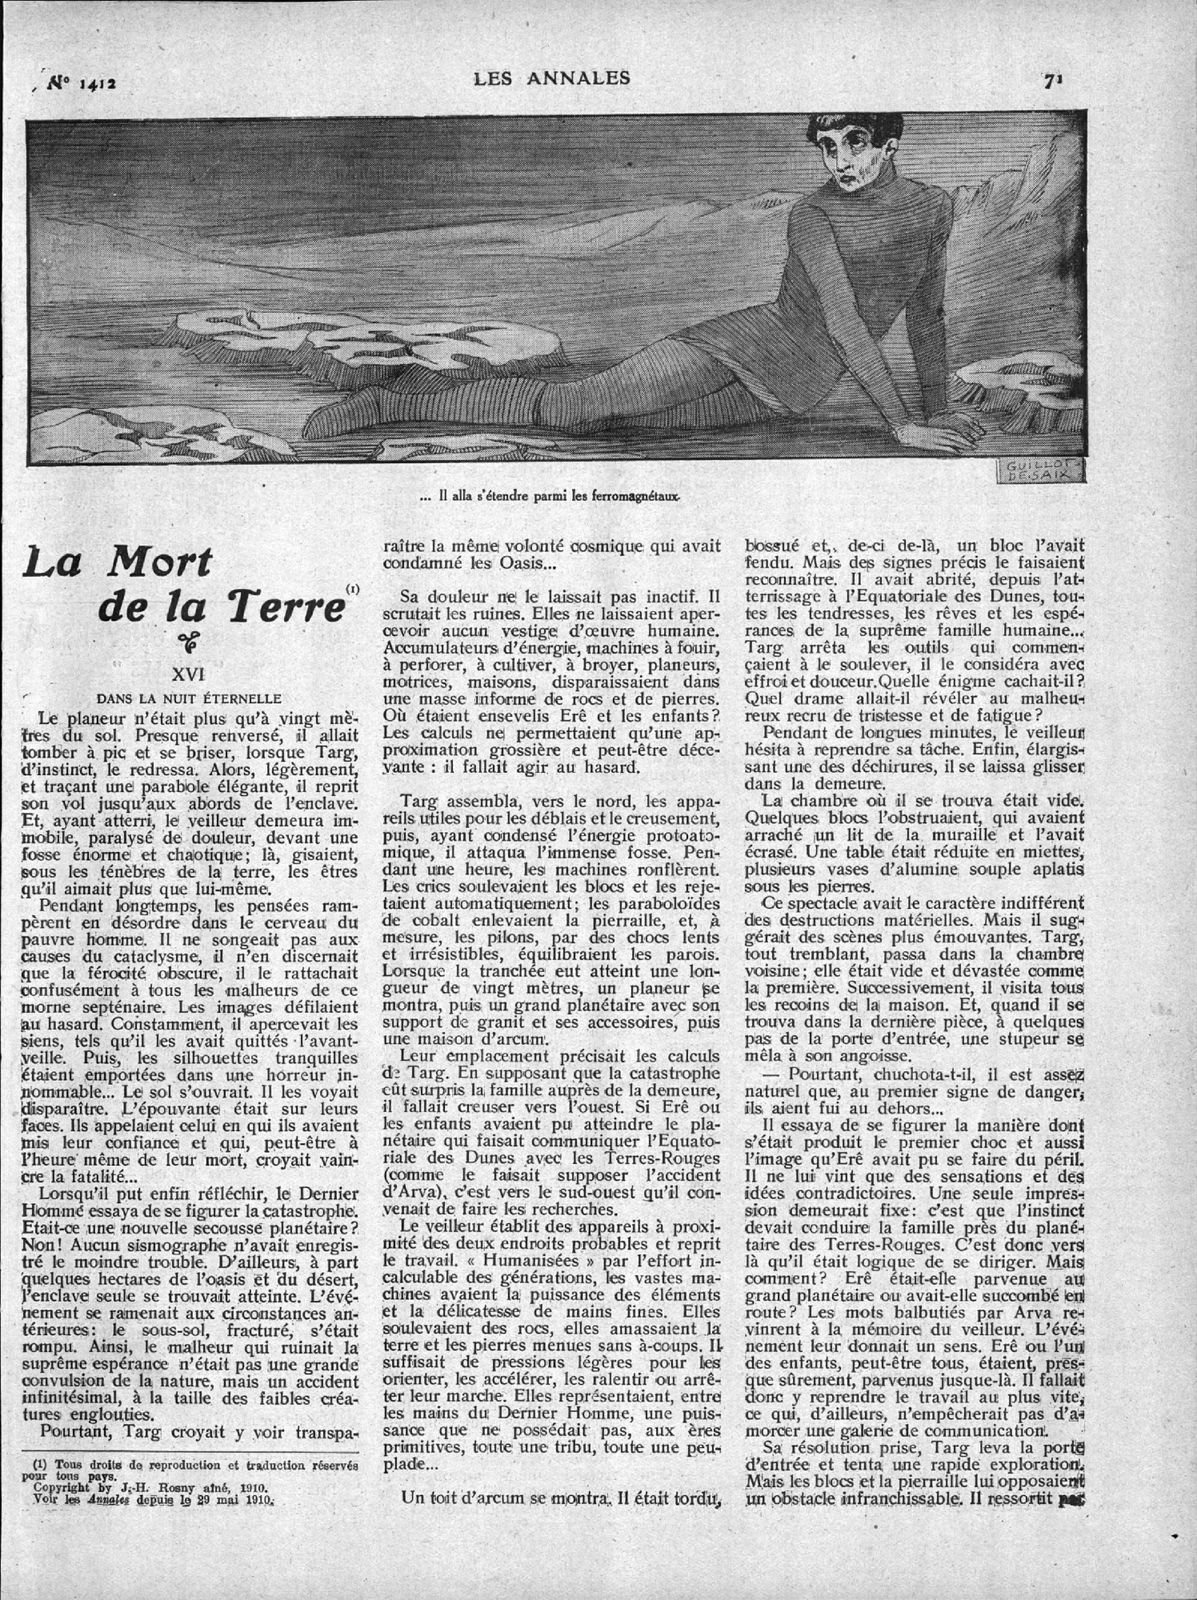 J.-H. Rosny aîné "La Mort de la Terre" in Les Annales politiques et littéraires n°1412 du 17 juillet 1910